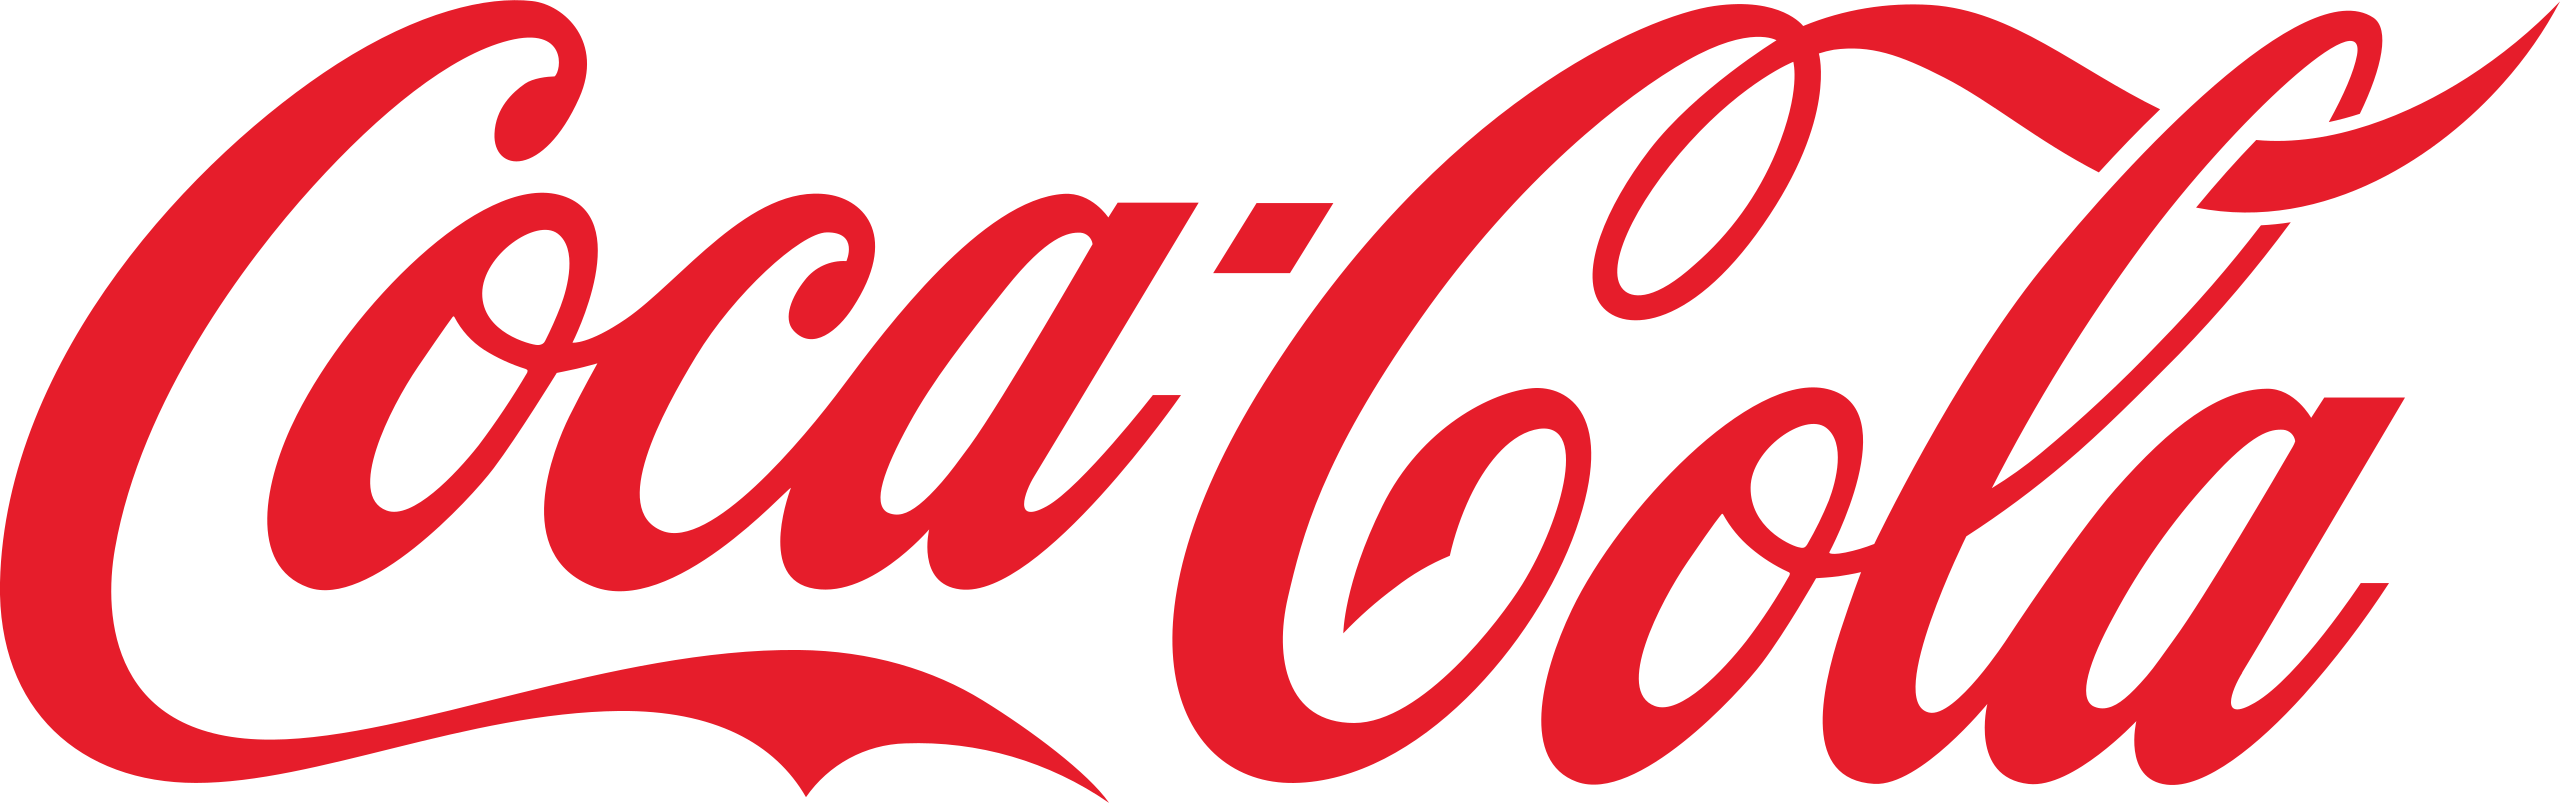 Cocacola : 